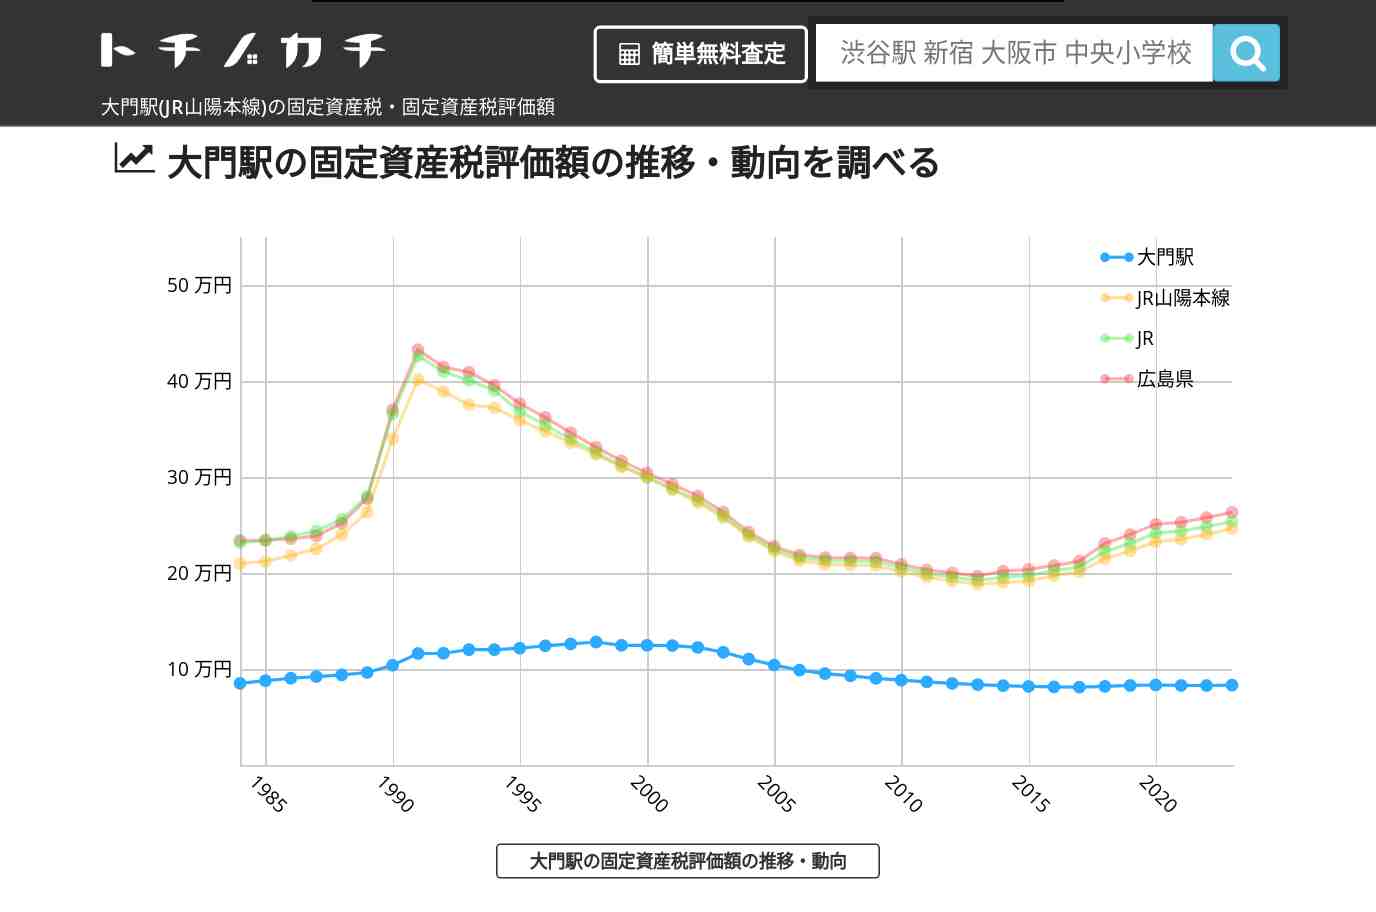 大門駅(JR山陽本線)の固定資産税・固定資産税評価額 | トチノカチ